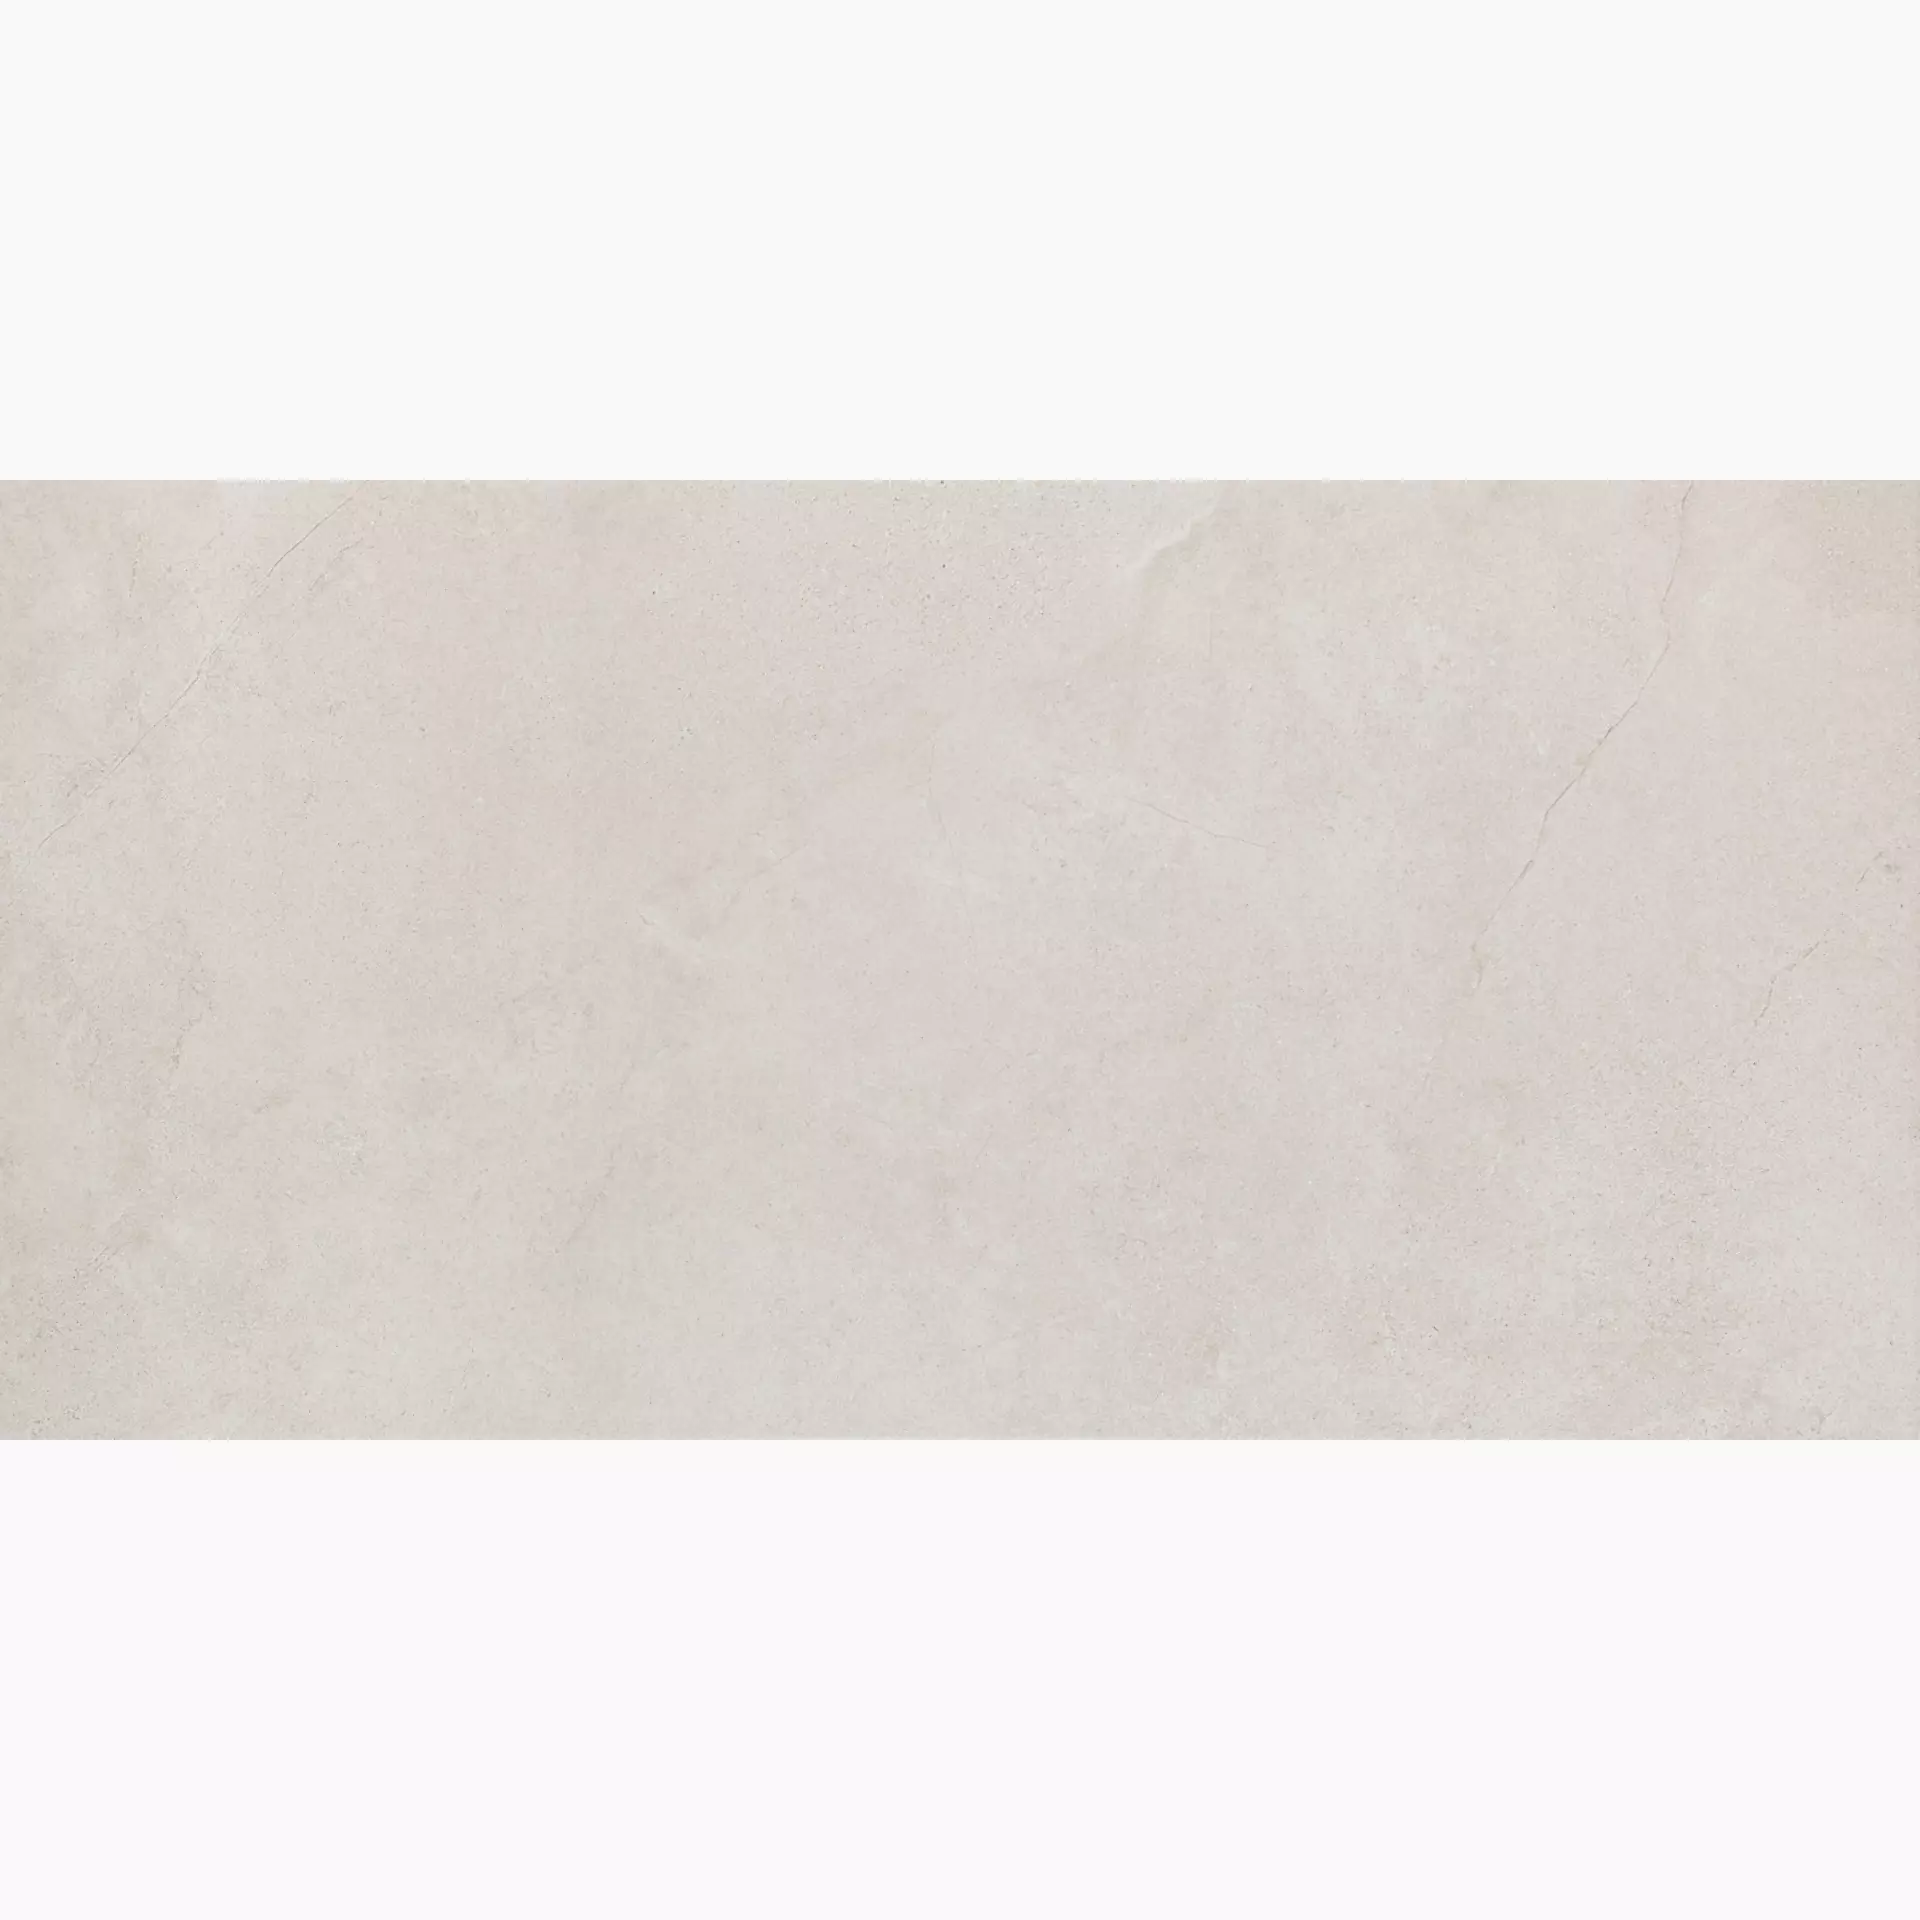 Marazzi Mystone Kashmir Bianco Naturale – Matt MLP3 60x120cm rectified 10mm